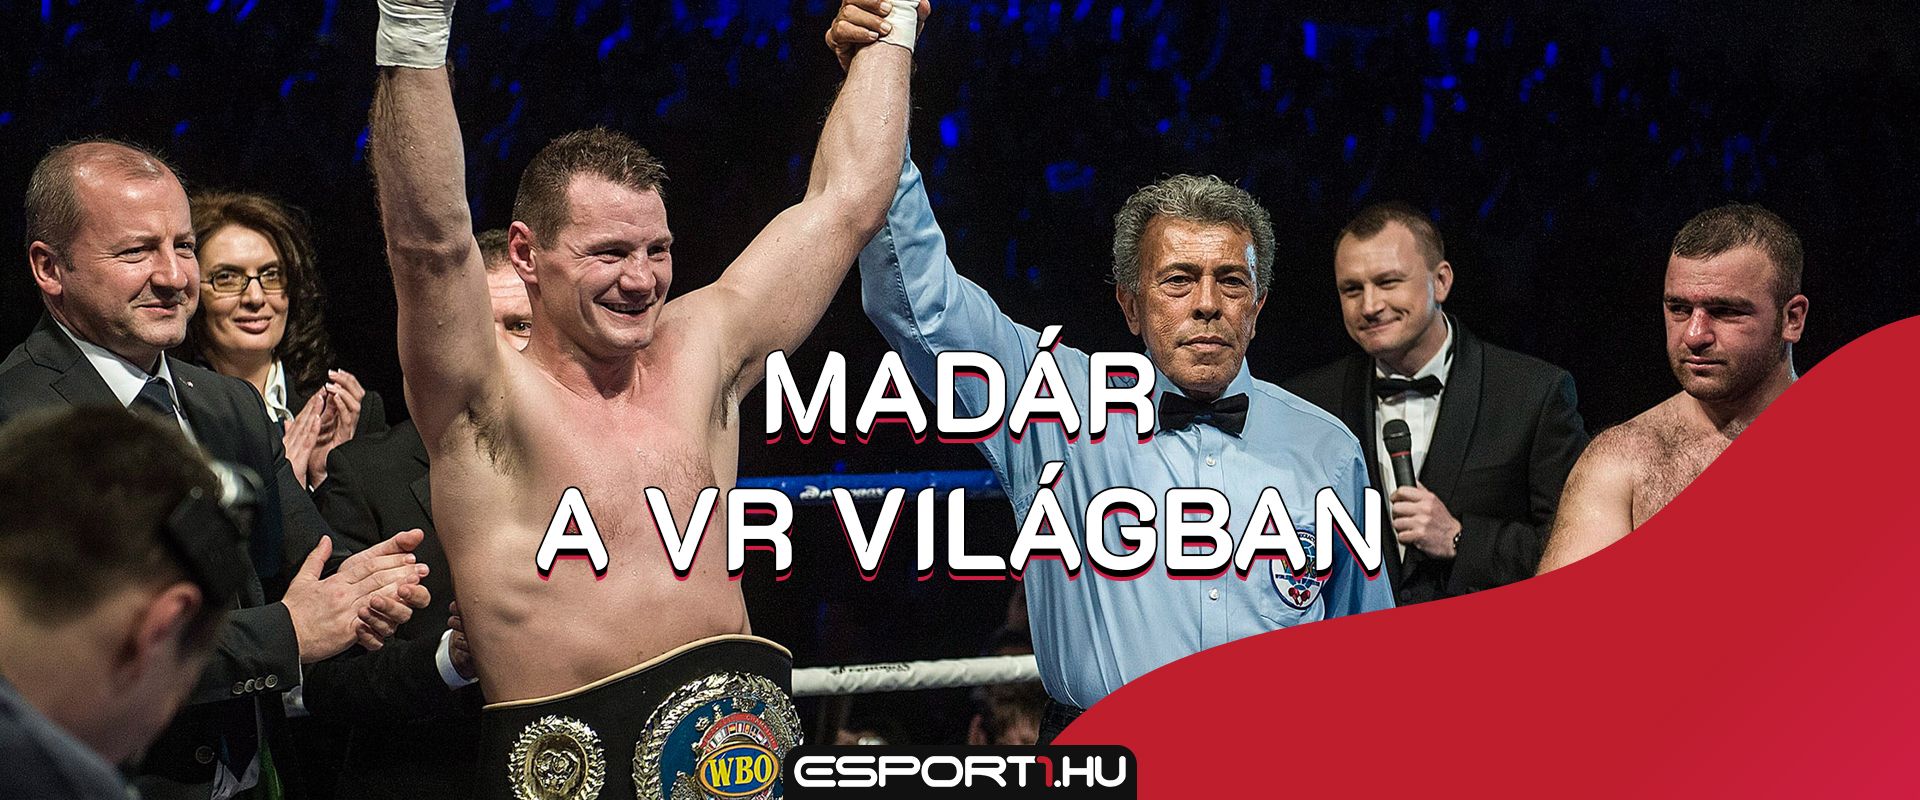 E-sportok és sportok különös találkozása: VR környezetben bokszol Madár